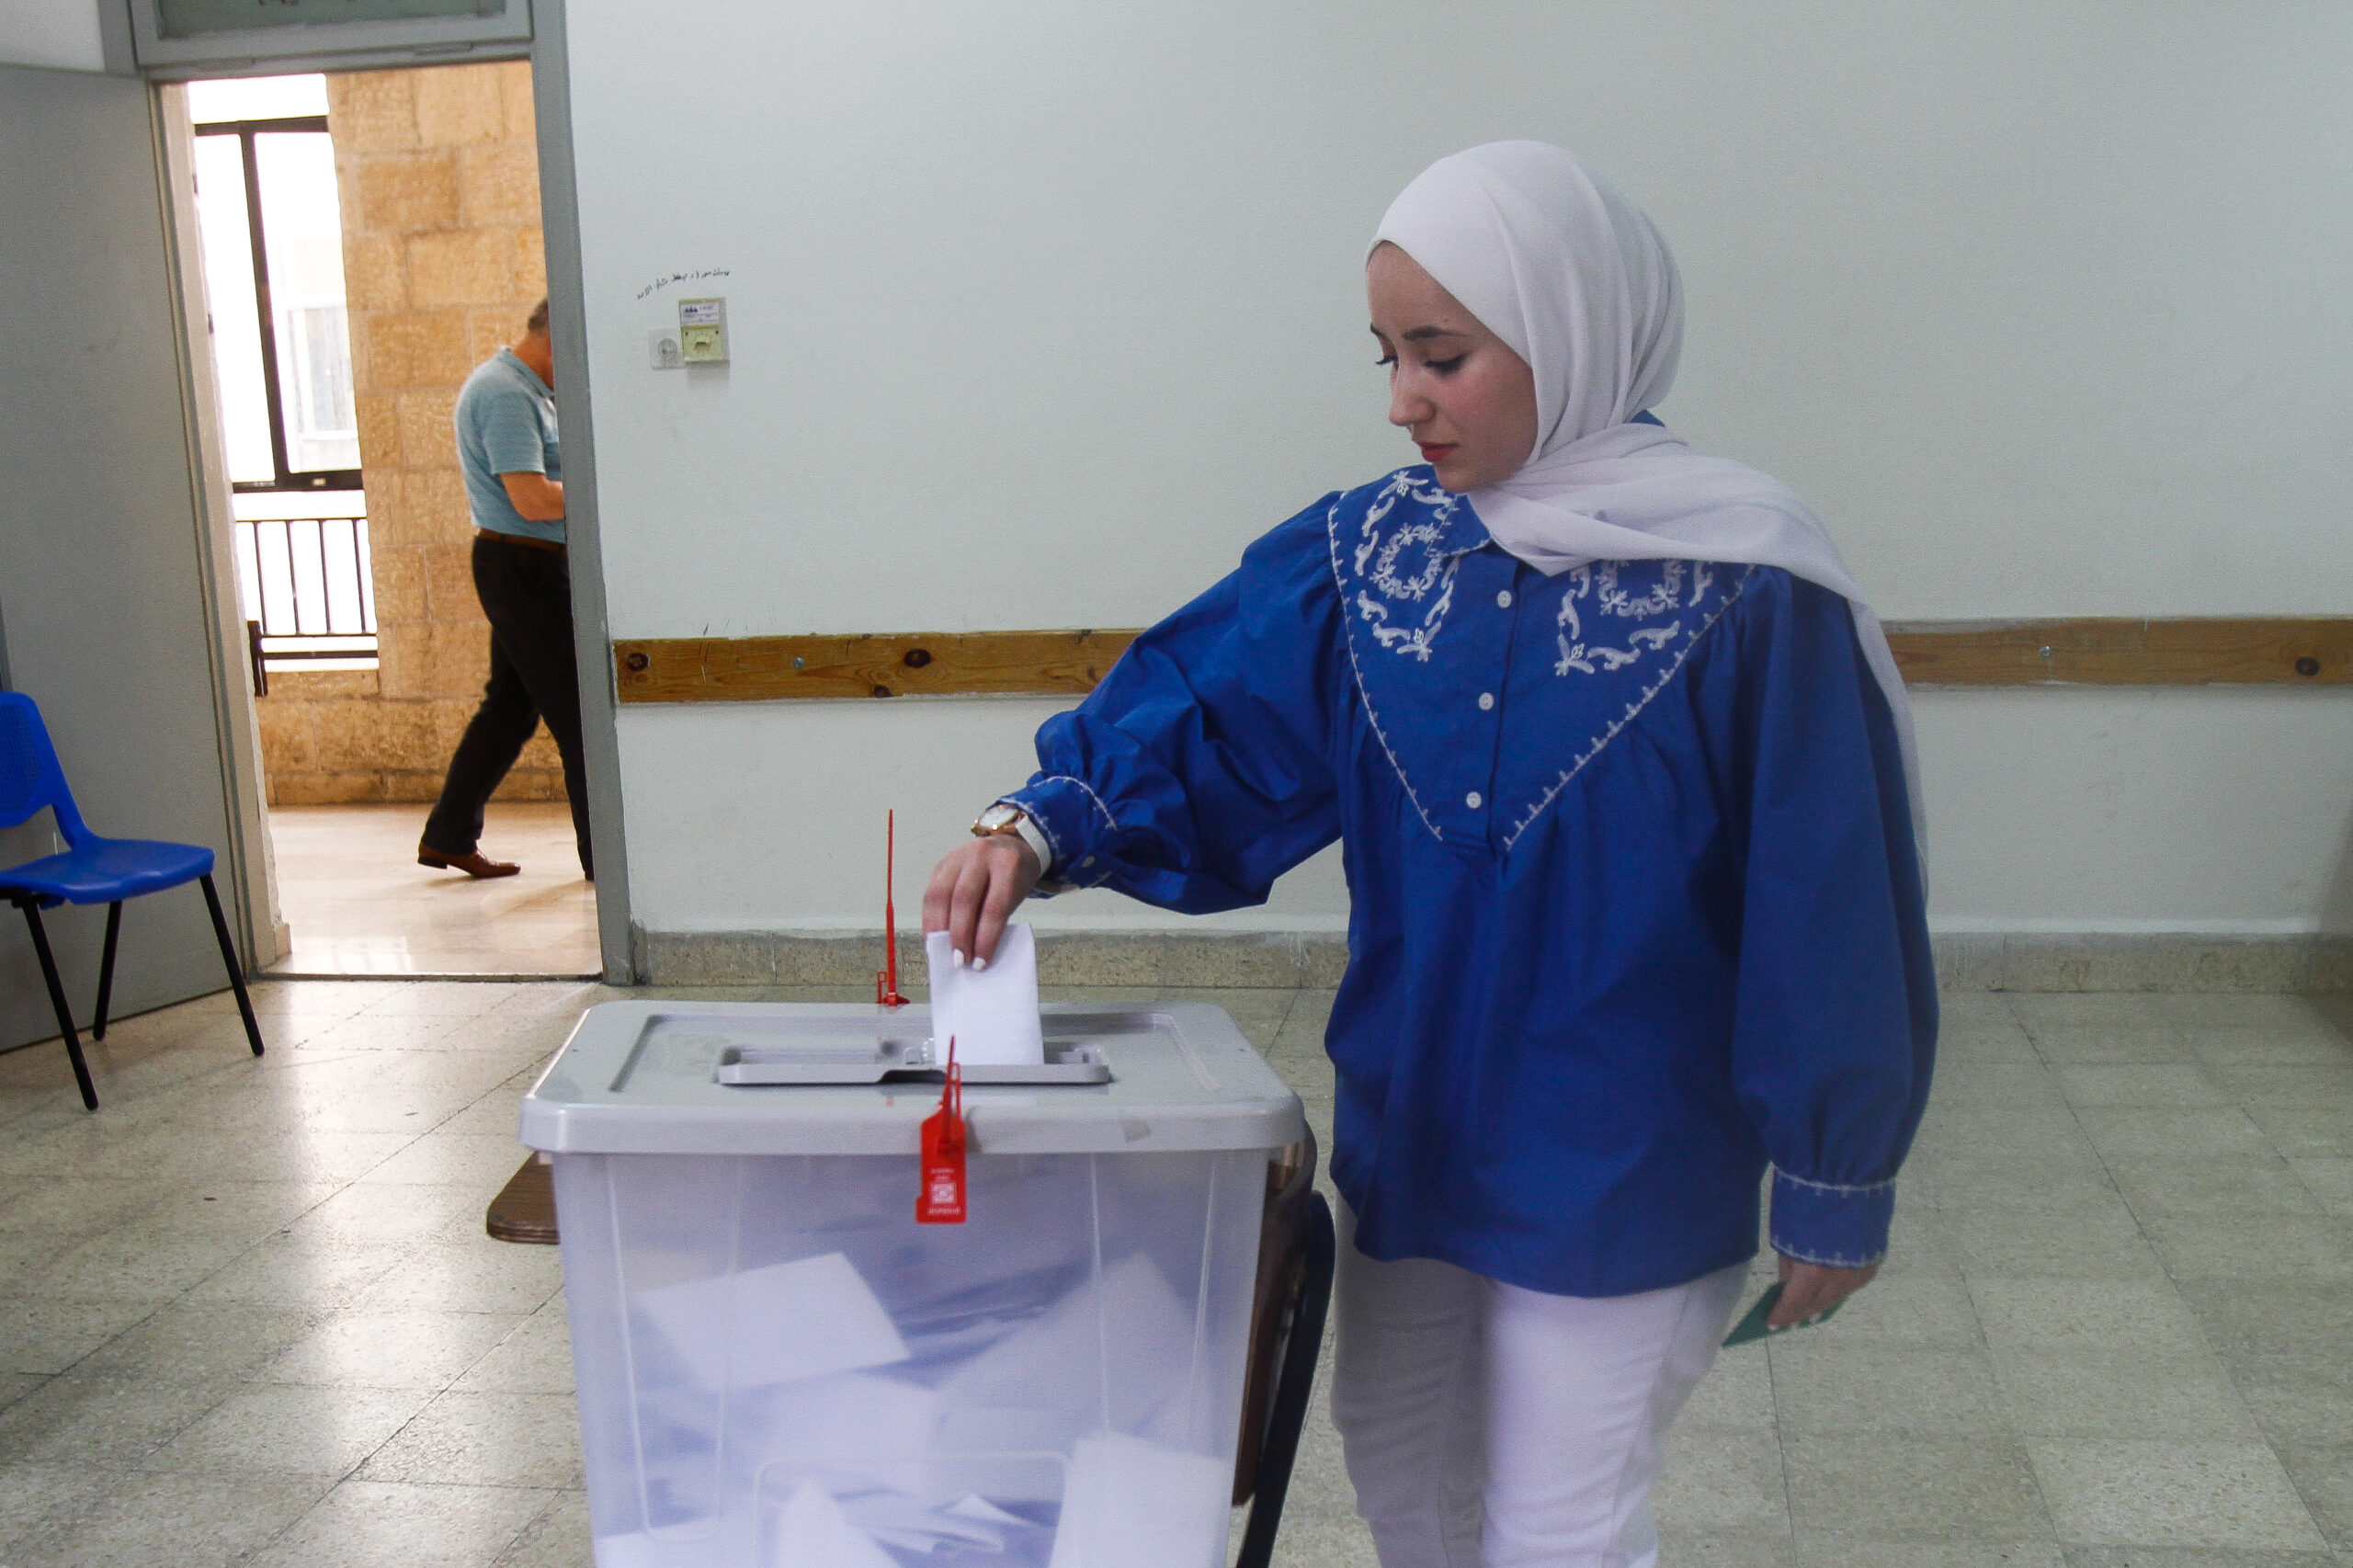 חמאס ניצח בבחירות האחרונות באוניברסיטאות בגדה. סטודנטים מצביעים בבחירות באוניברסיטת א-נג'אח, מאי 2023 (צילום: נאסר שתאיה / פלאש 90)